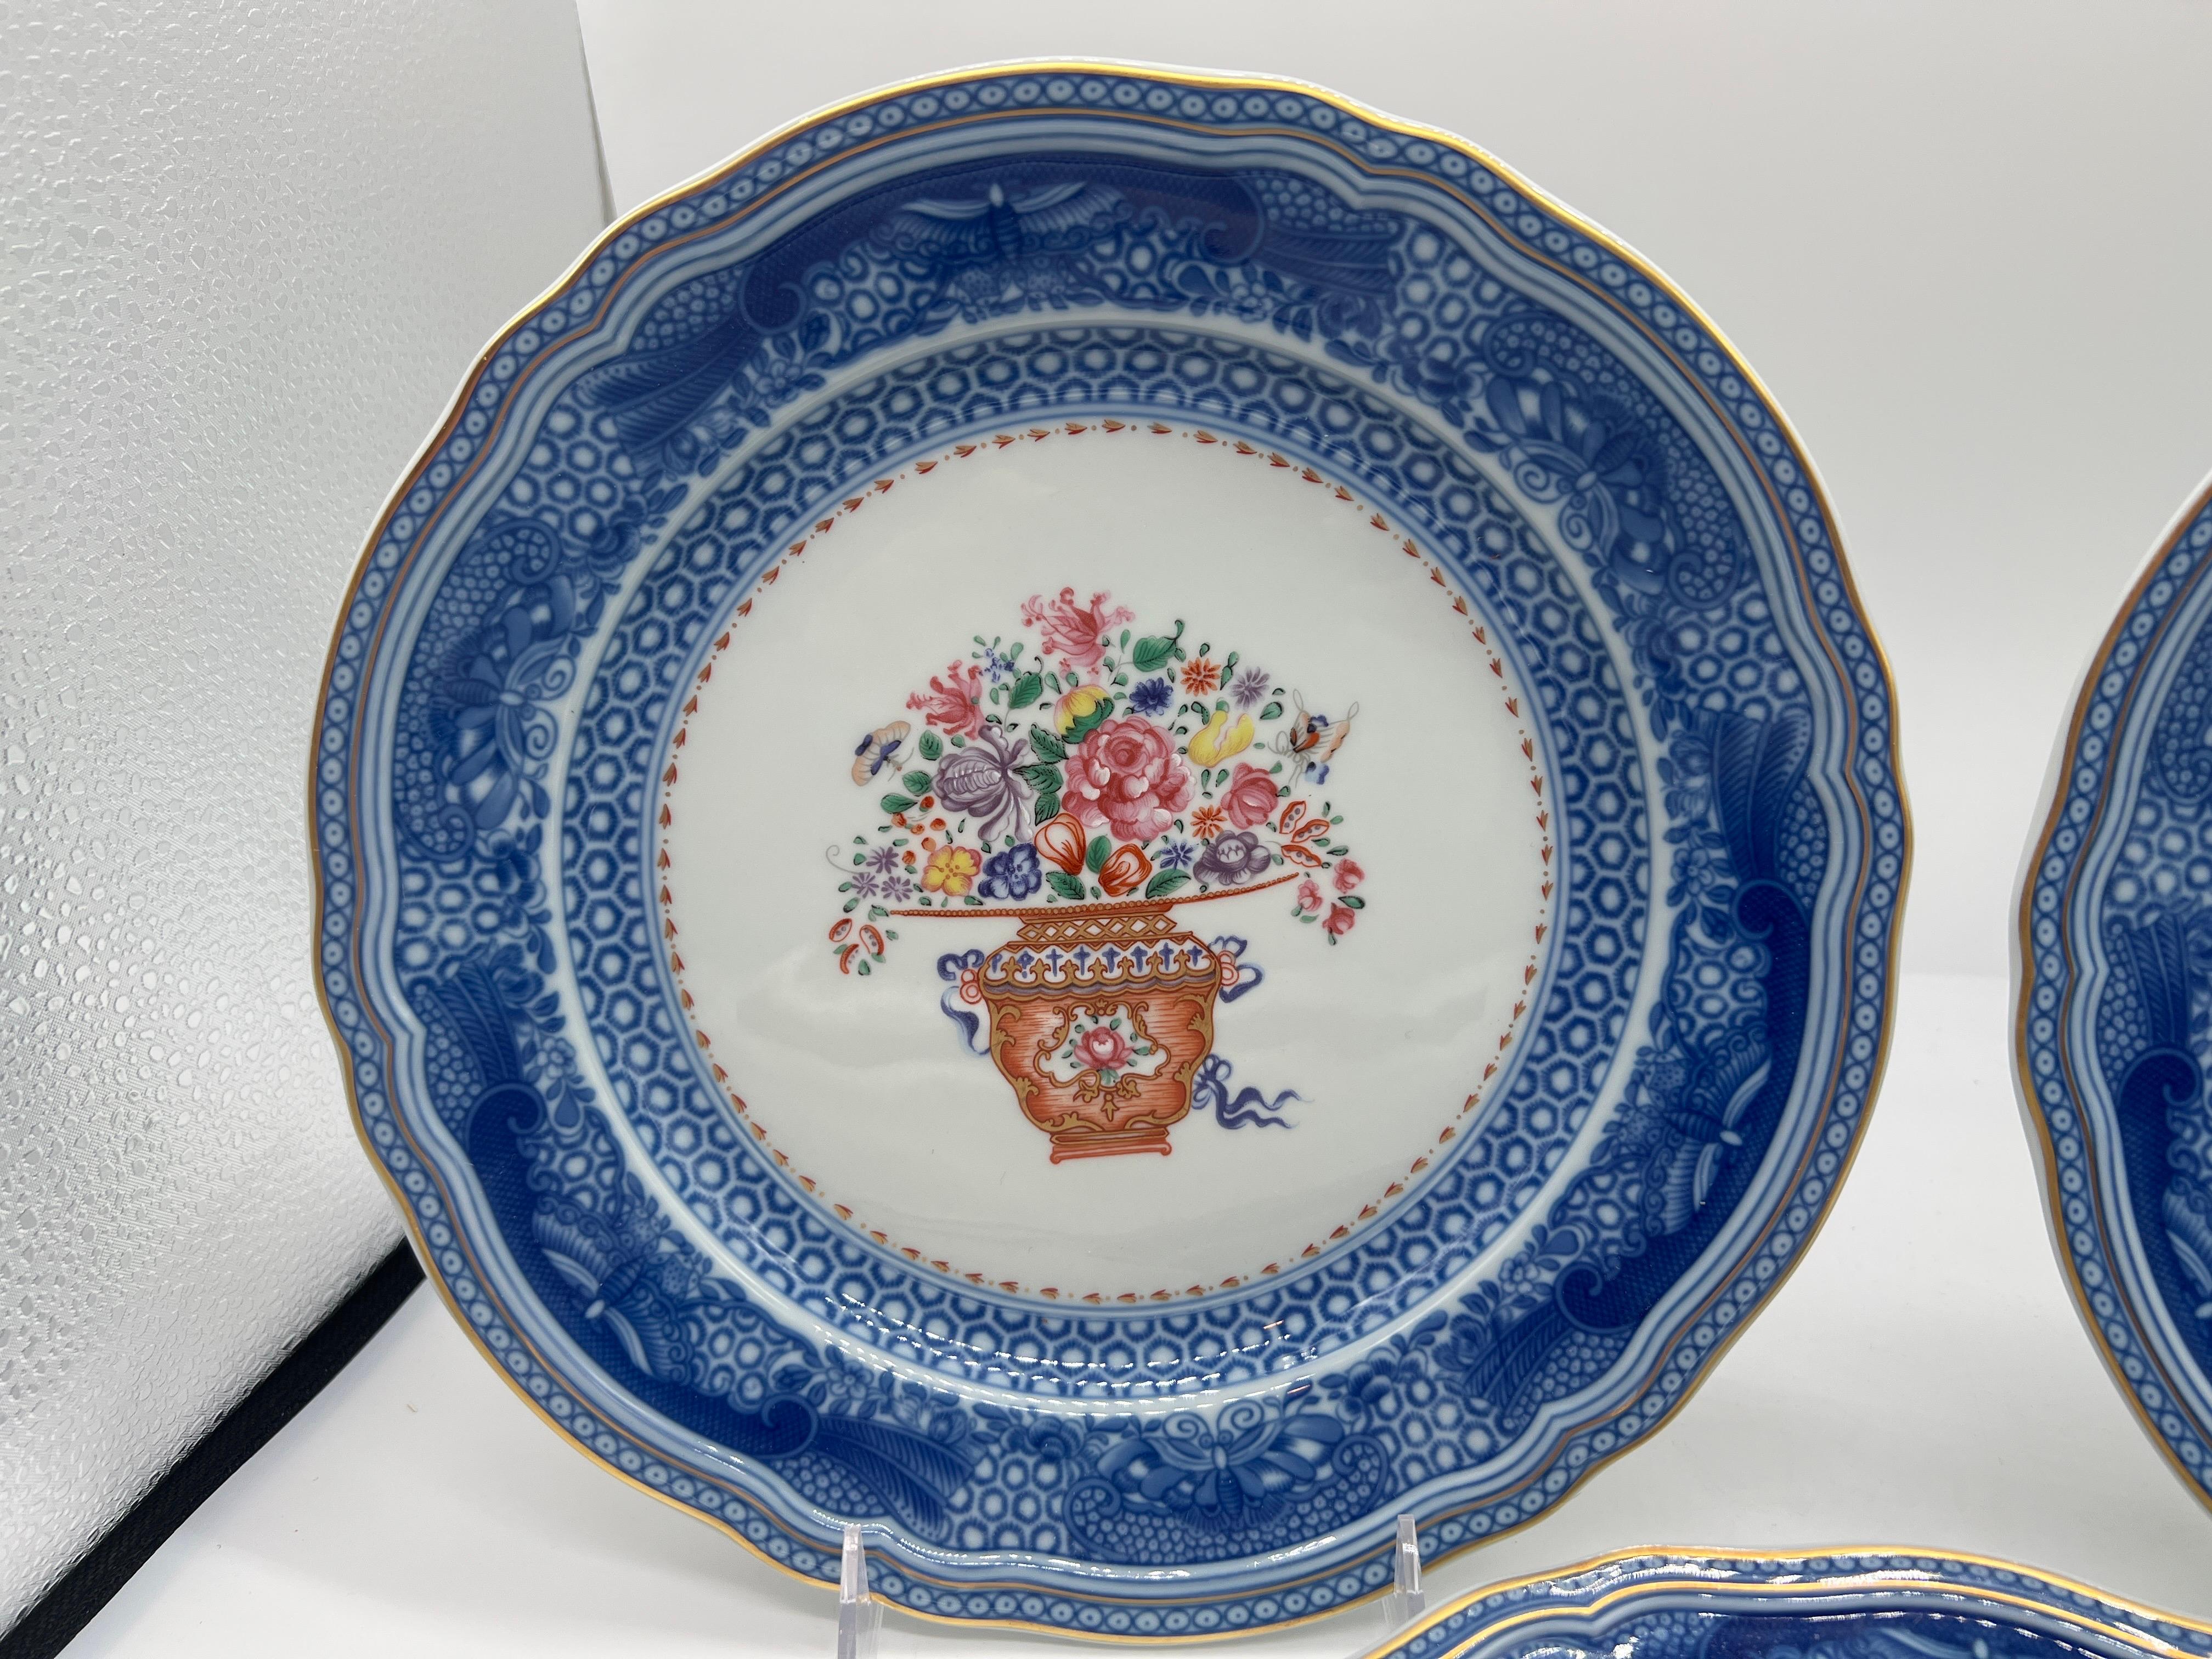 Mottahedeh (américain, fondé au début du 20e siècle).

Un groupe de 3 pièces en porcelaine représentant le Bouquet Mandarin de l'Adaptation de Winterthur comprenant (2) deux assiettes à dîner de 10,25